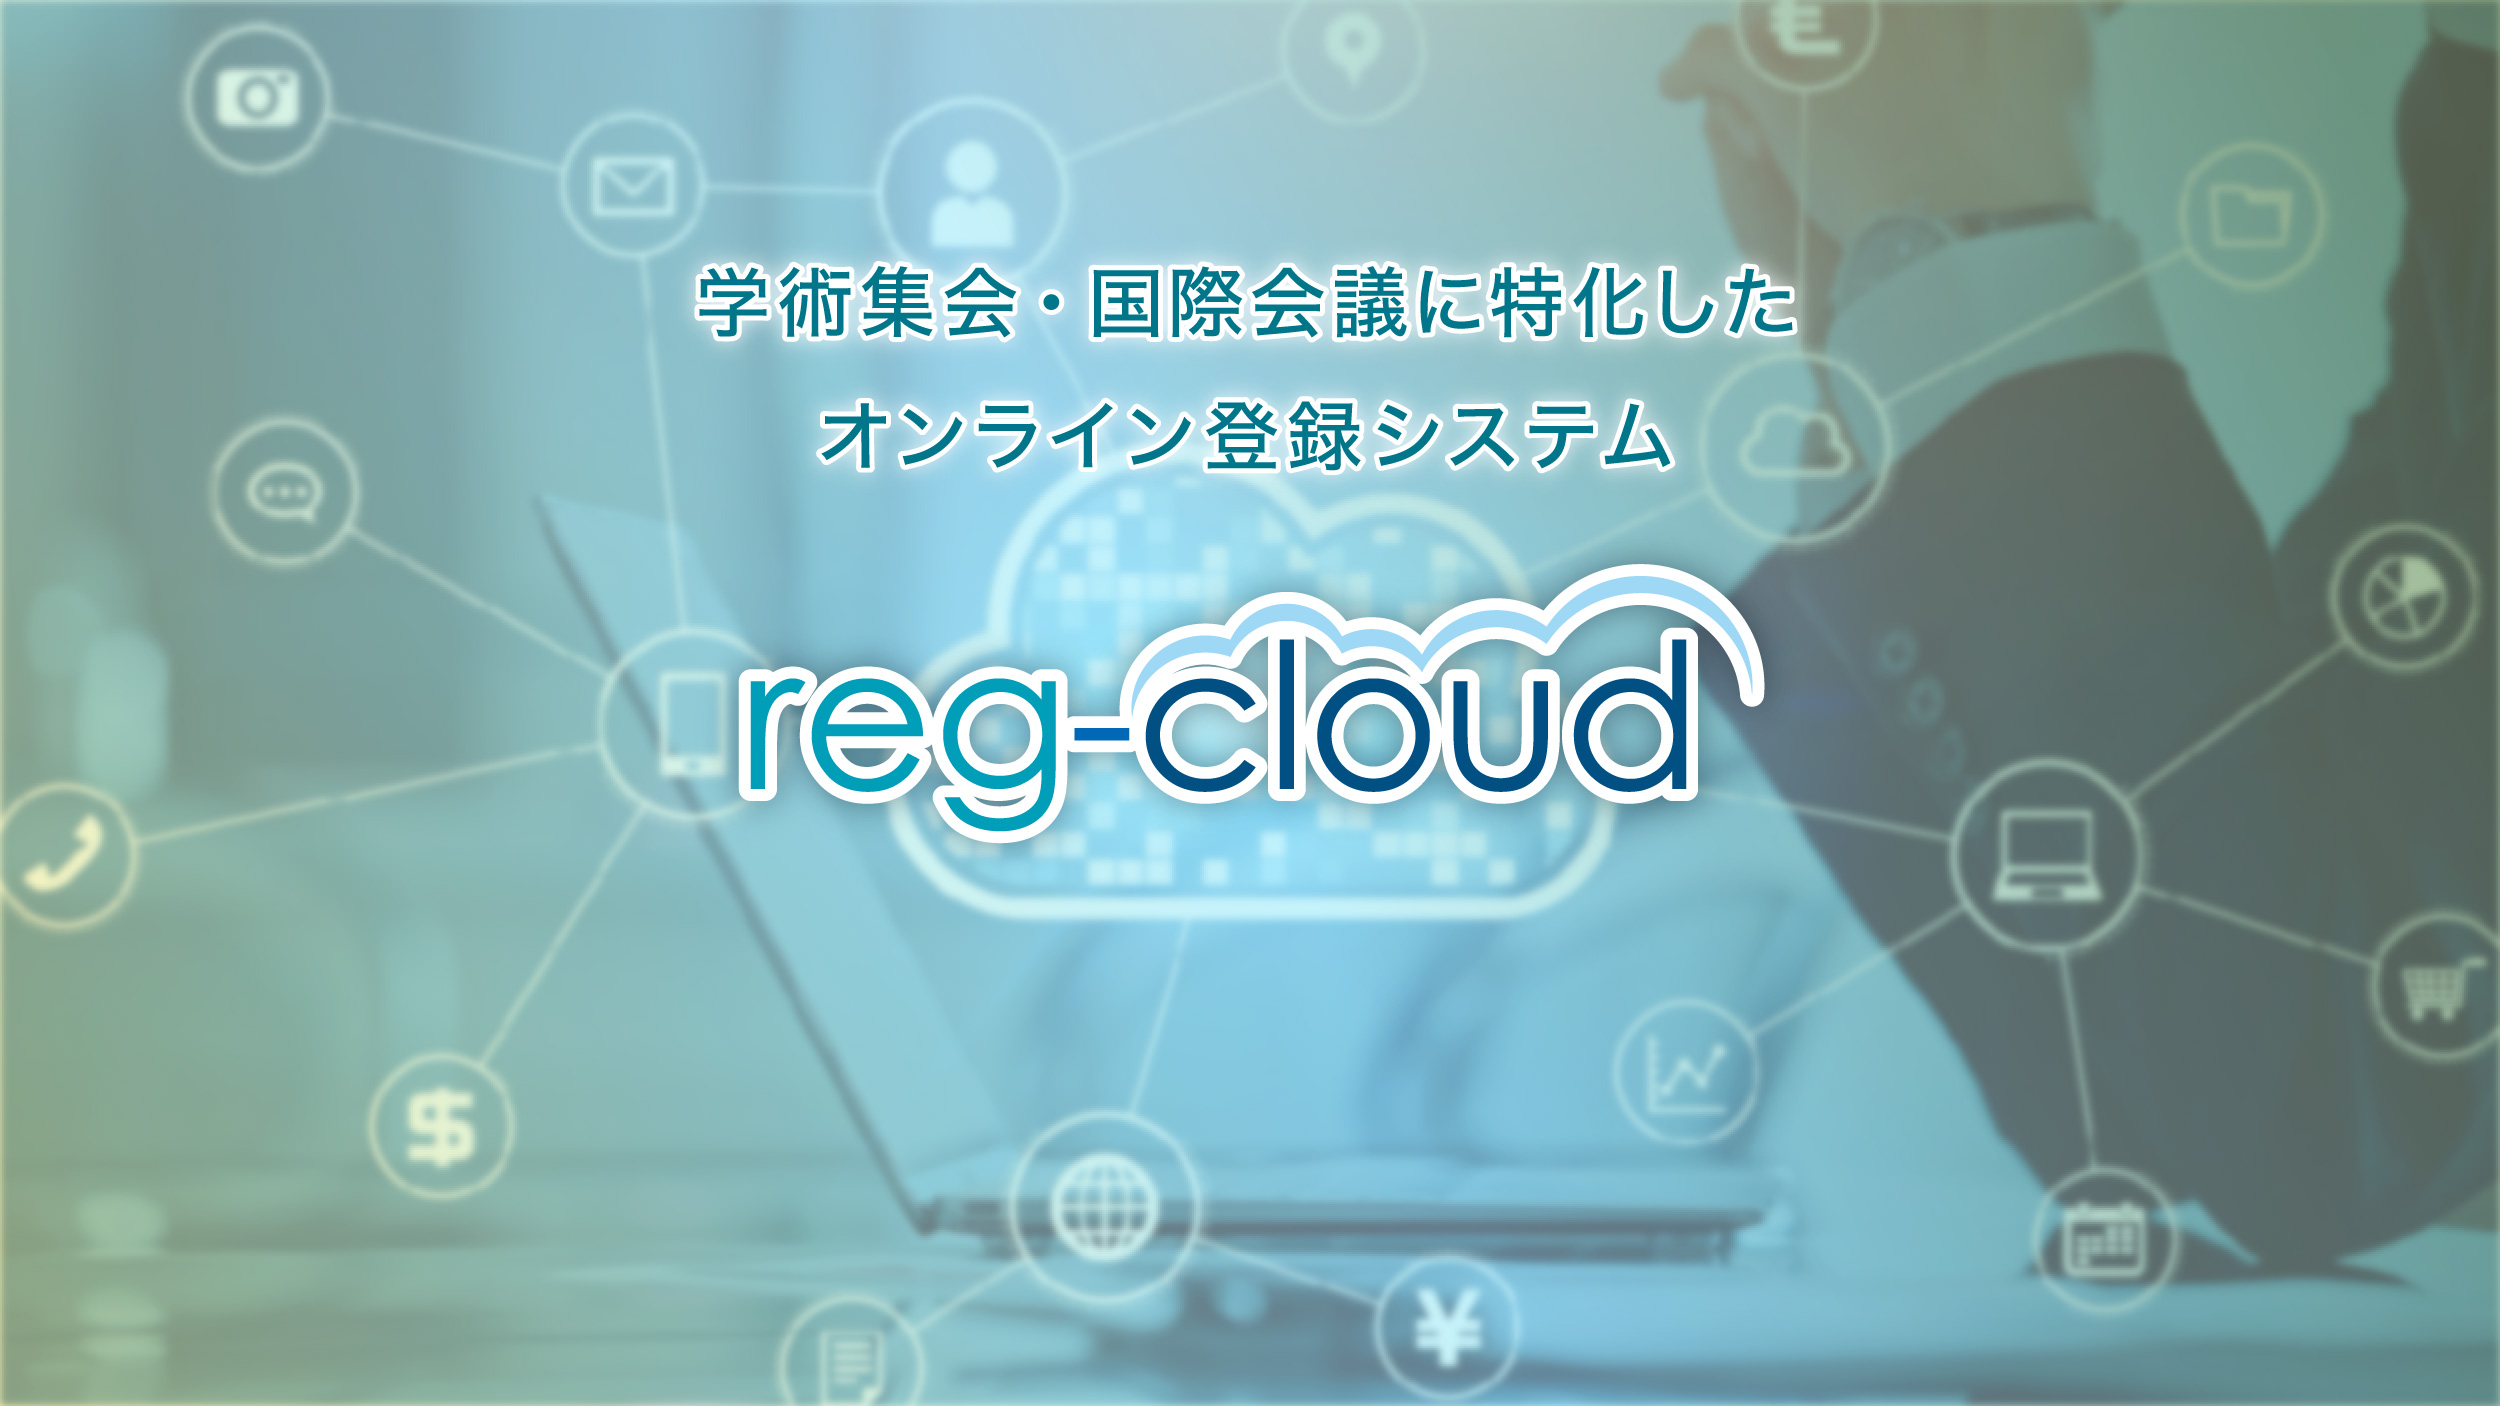 オンライン登録システム　reg-cloud（レジクラウド）